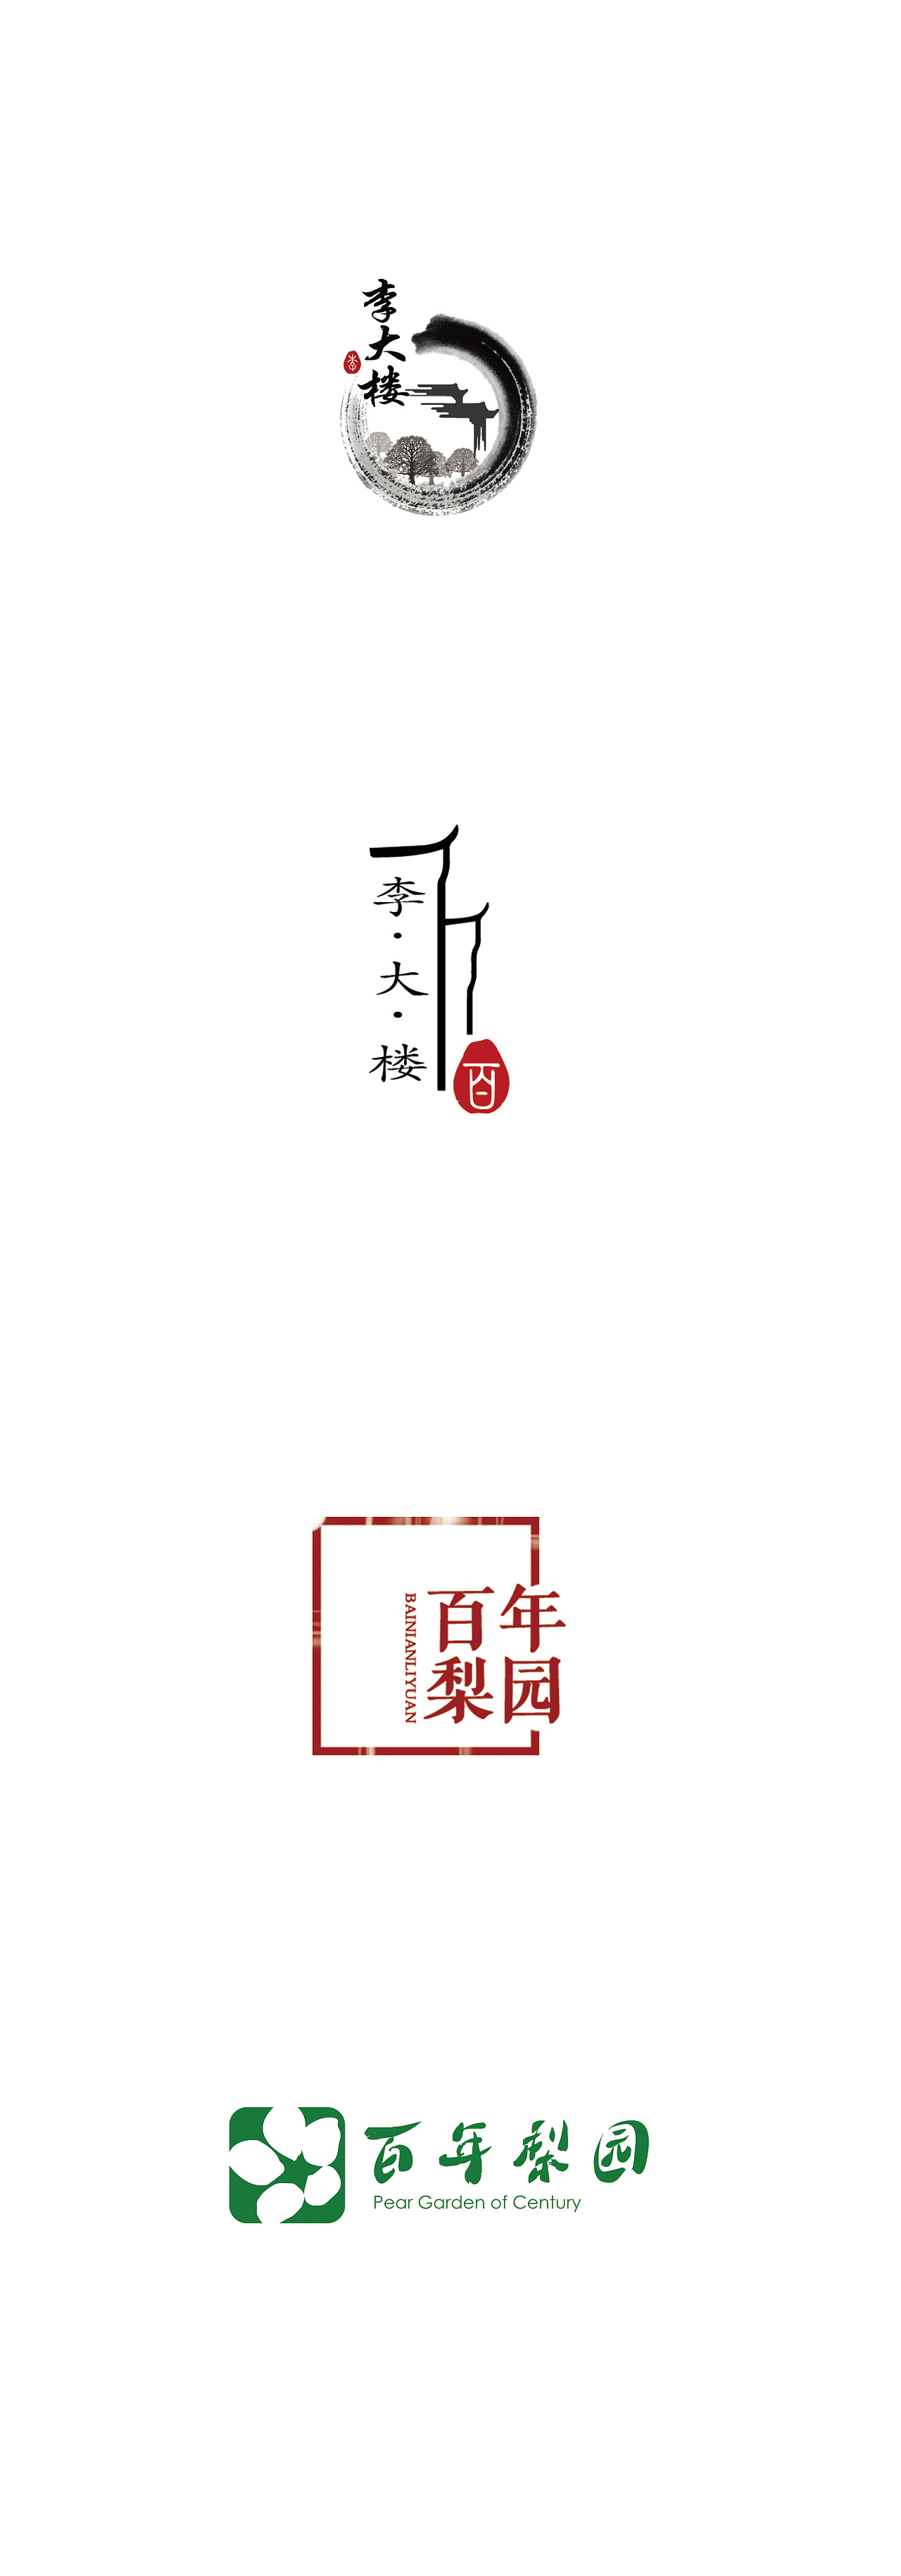 李大楼百年梨园logo